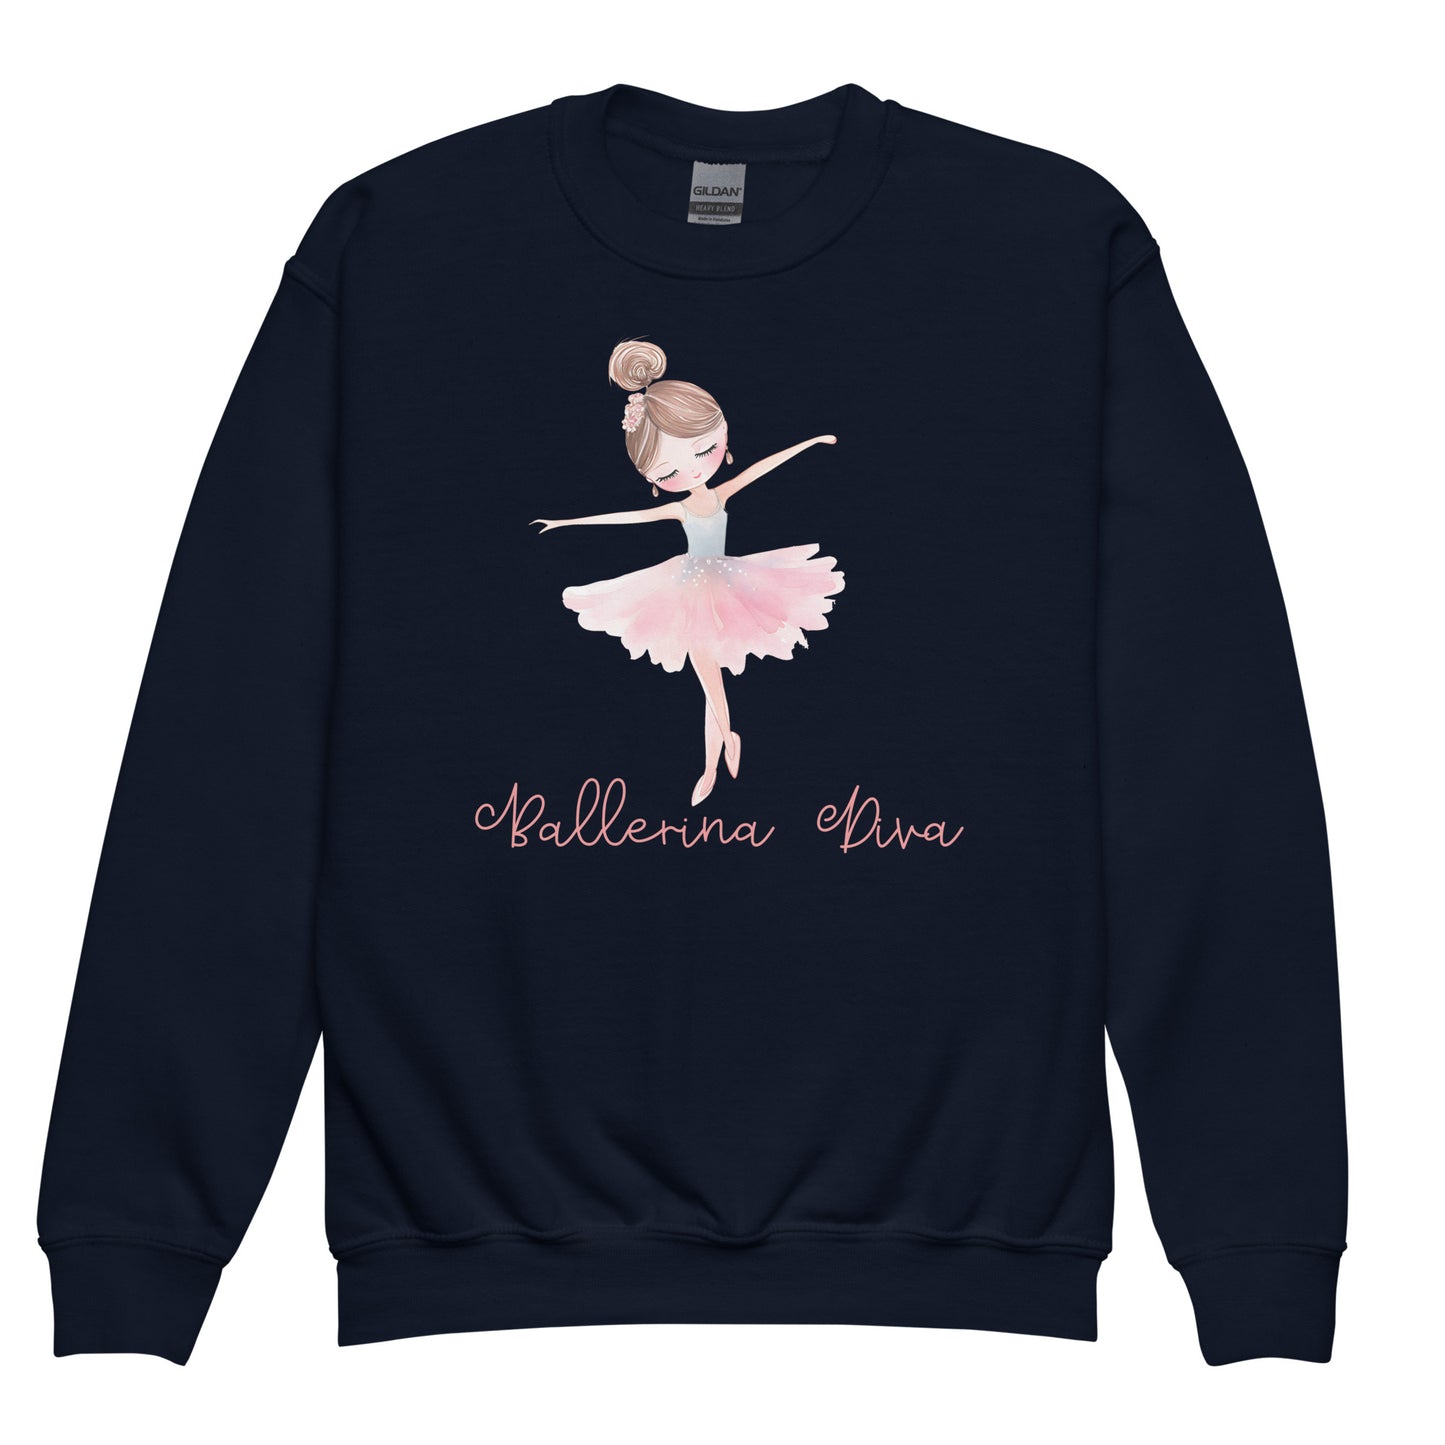 Kids Navy Blue Sweatshirt - Ballerina Diva, Ballerina Graphic Front View